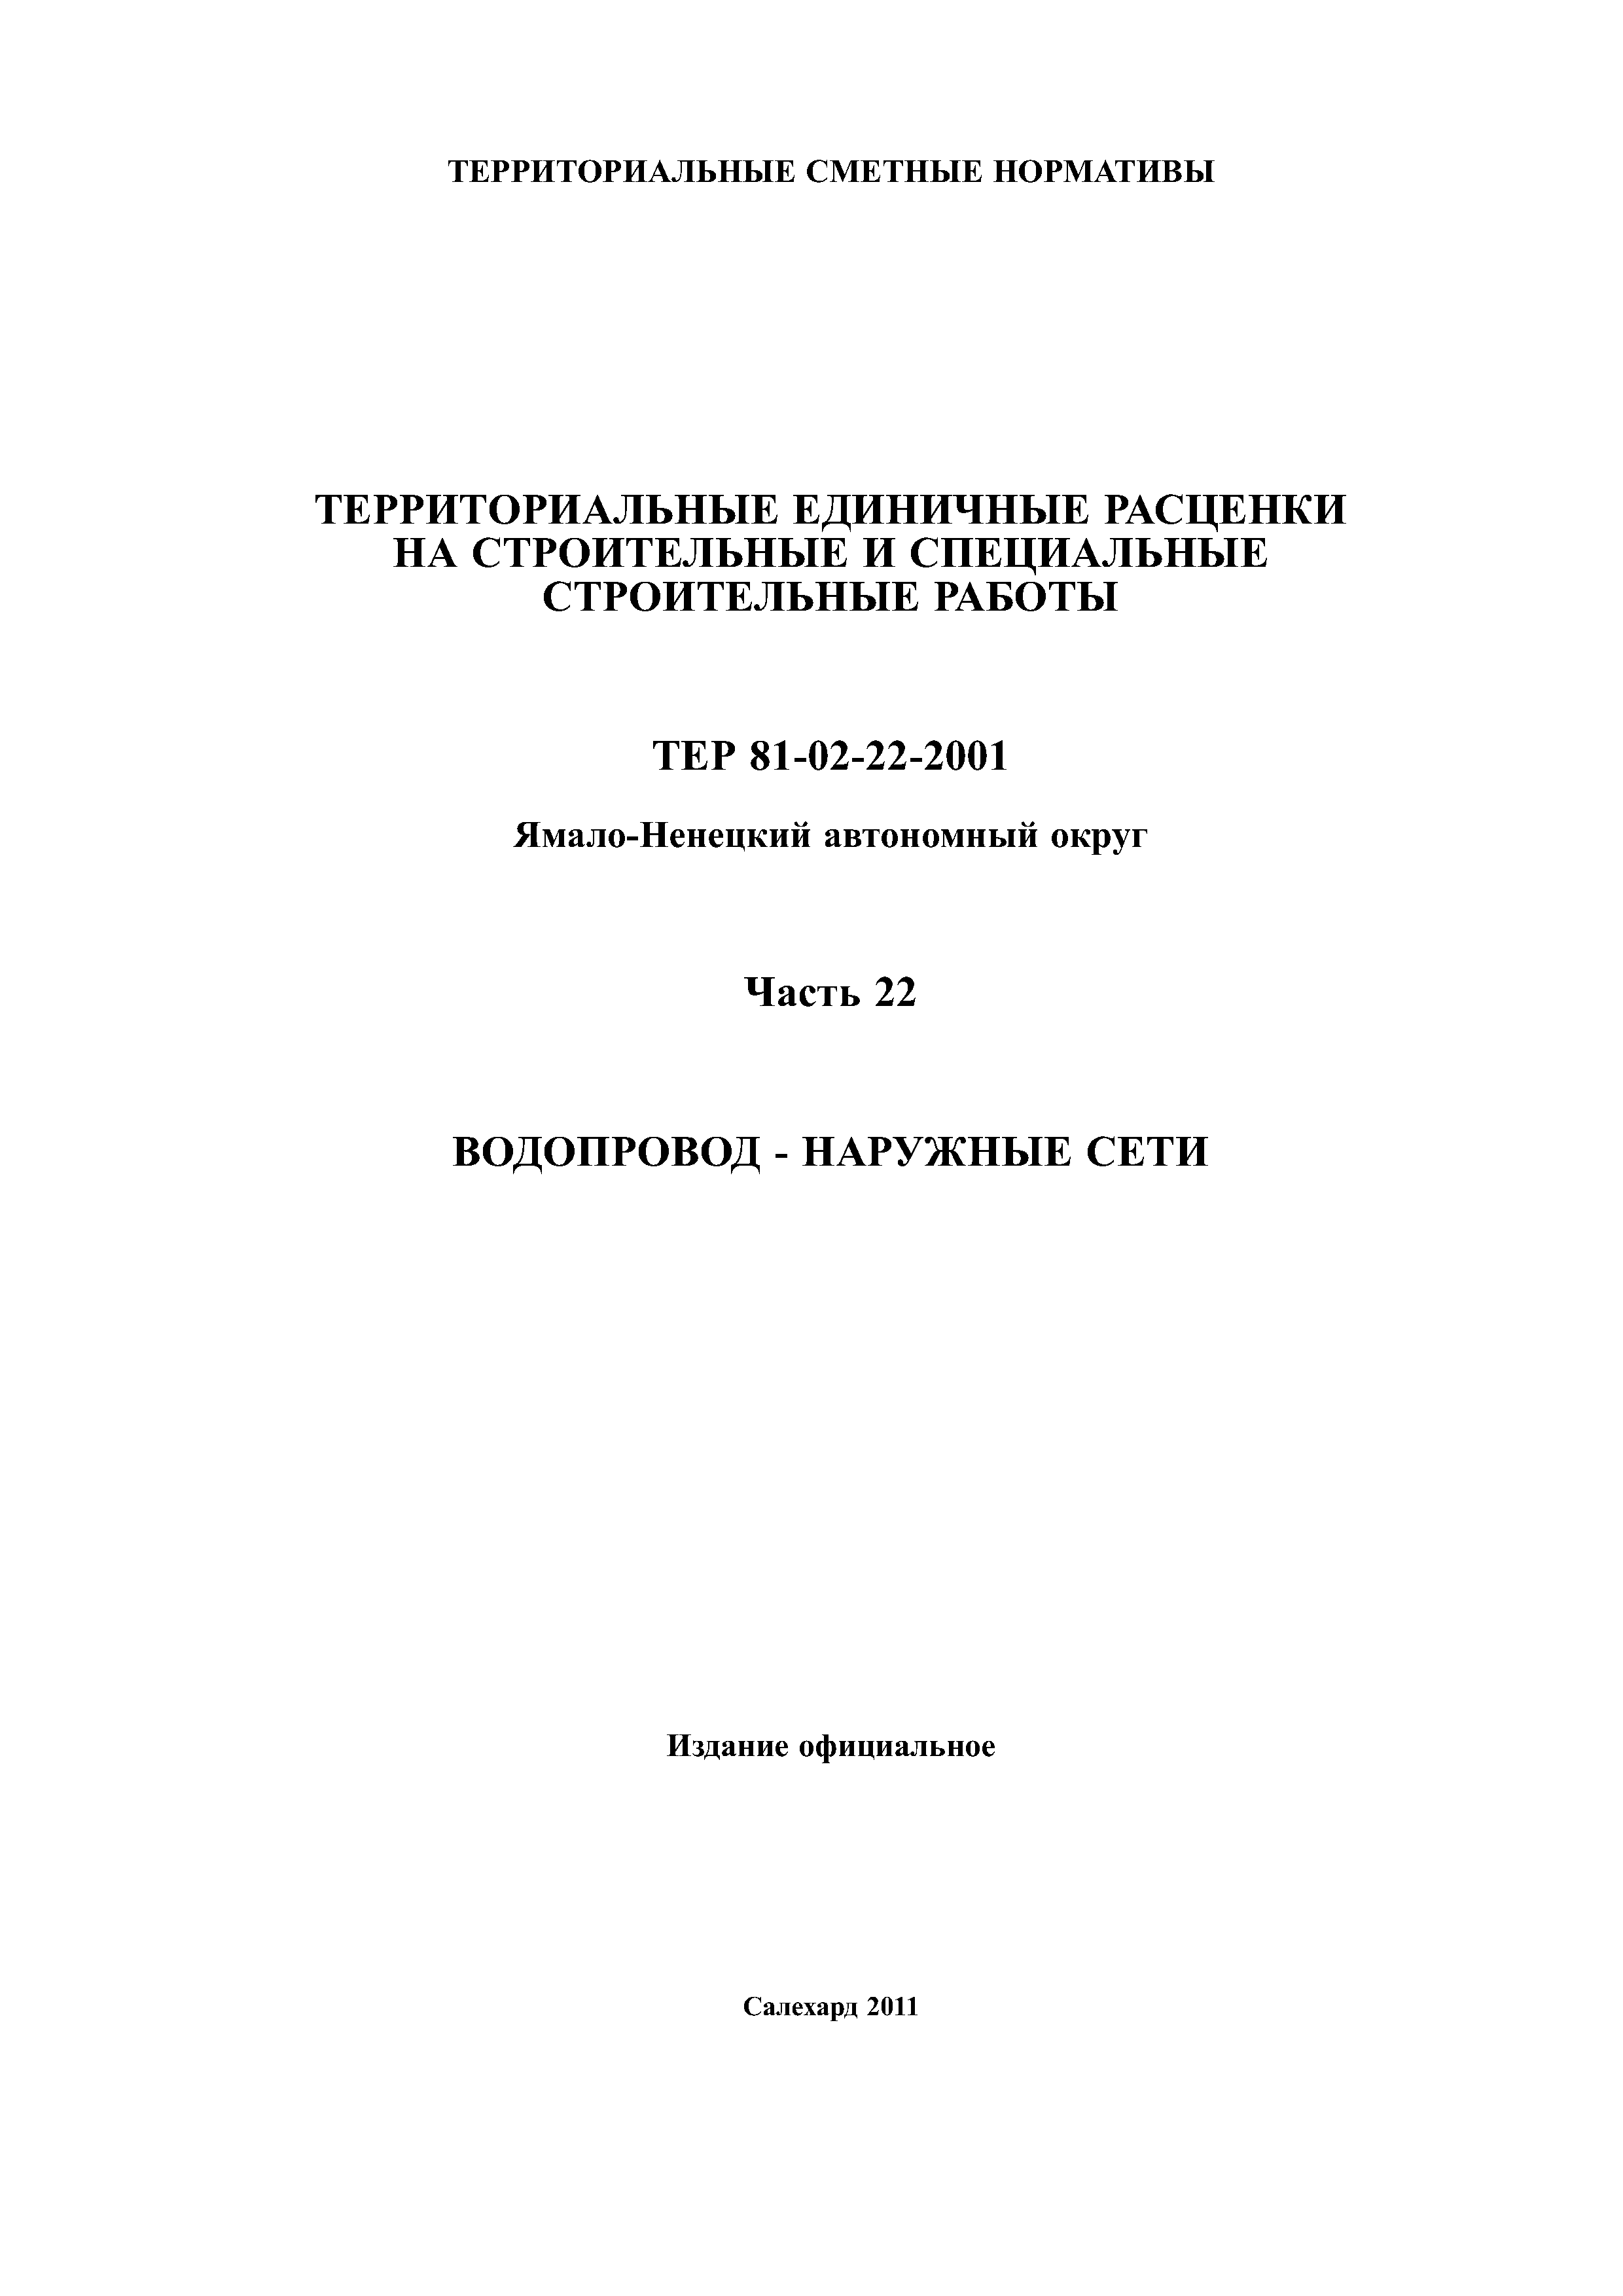 ТЕР Ямало-Ненецкий автономный округ 22-2001